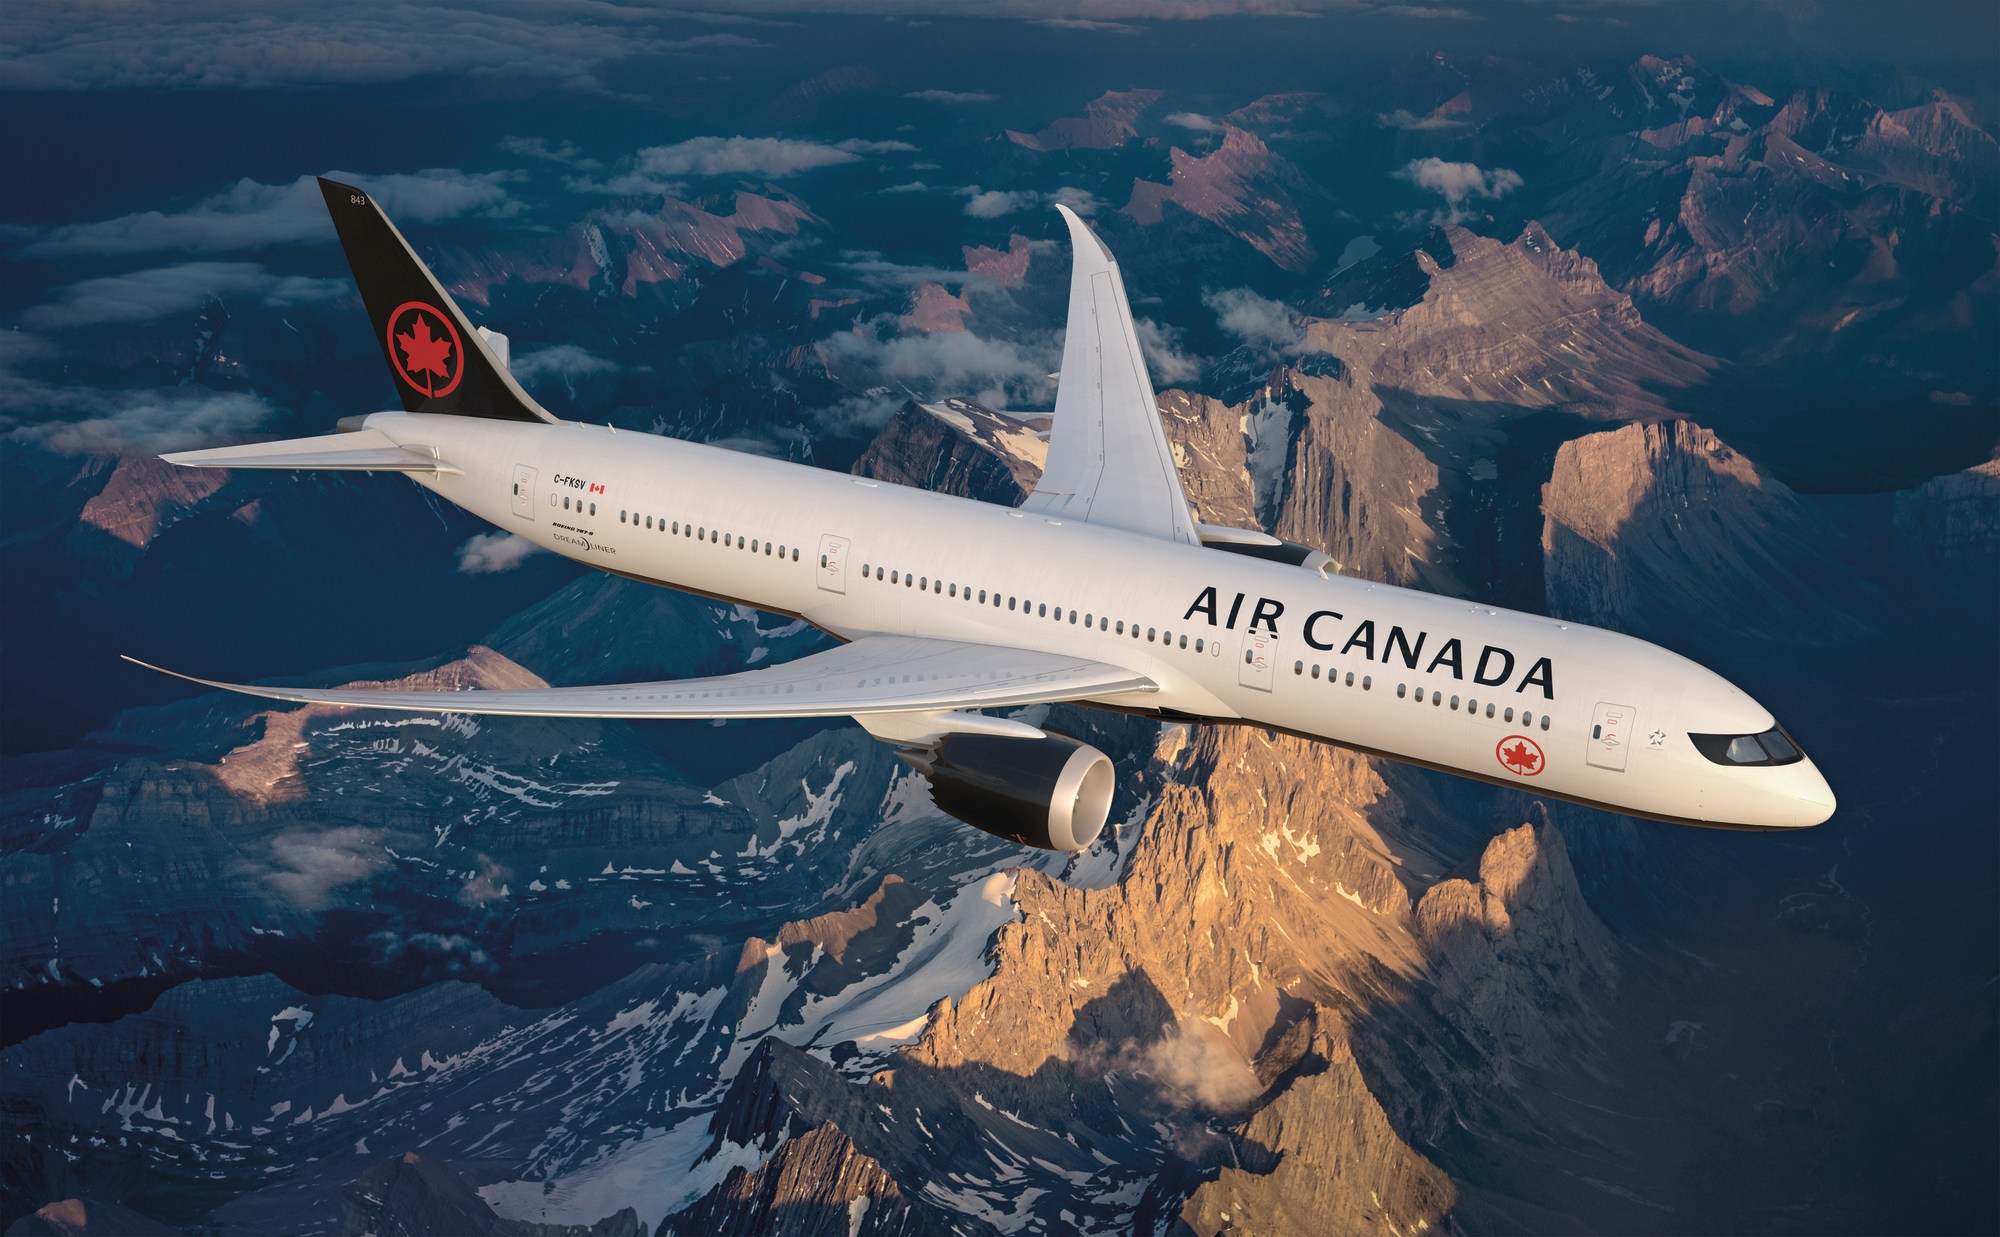 Î‘Ï€Î¿Ï„Î­Î»ÎµÏƒÎ¼Î± ÎµÎ¹ÎºÏŒÎ½Î±Ï‚ Î³Î¹Î± Air Canada starts Montreal-Bucharest Flights